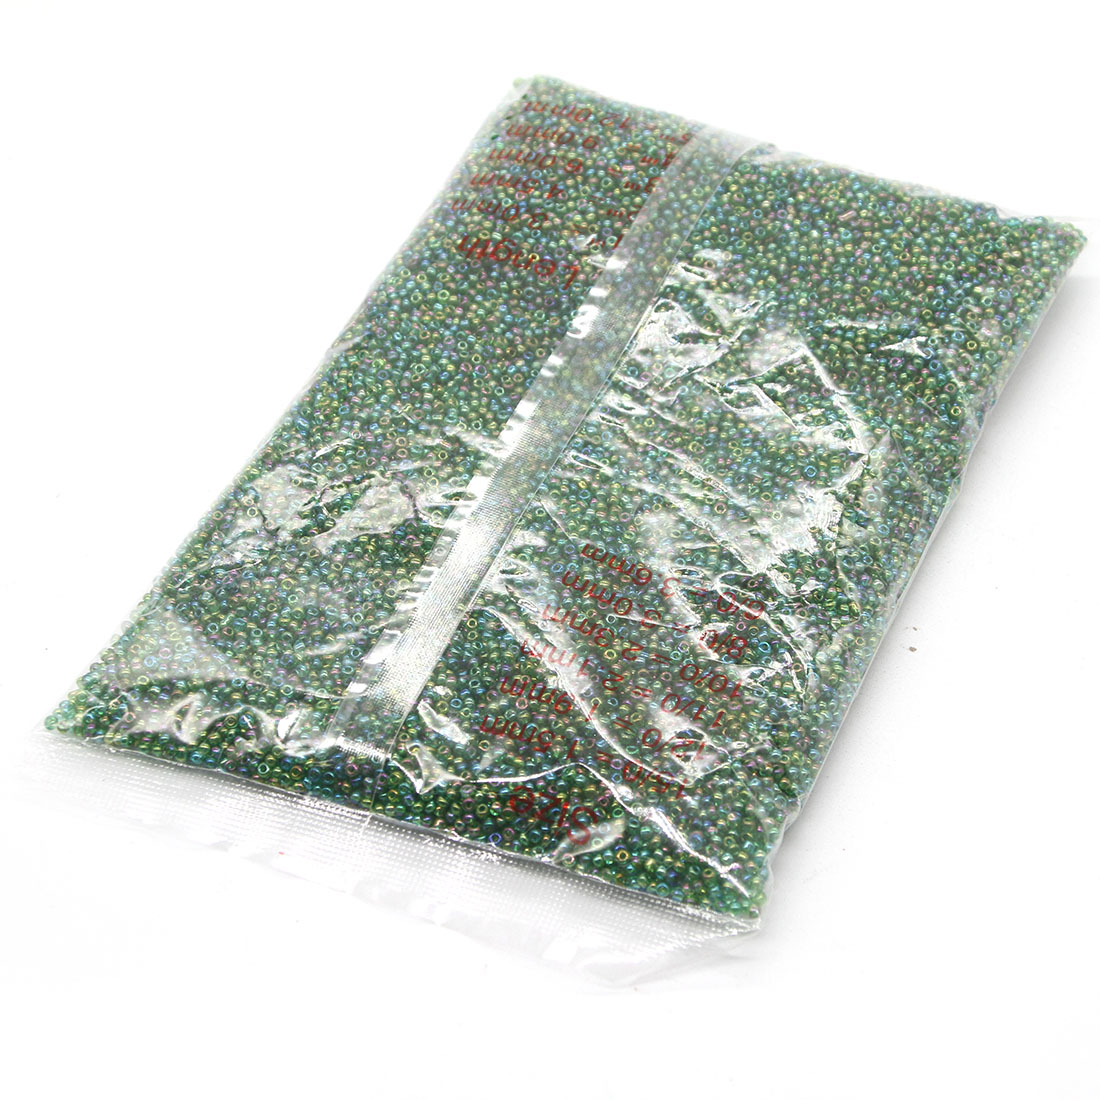 Grass green 3mm 10,000 packs